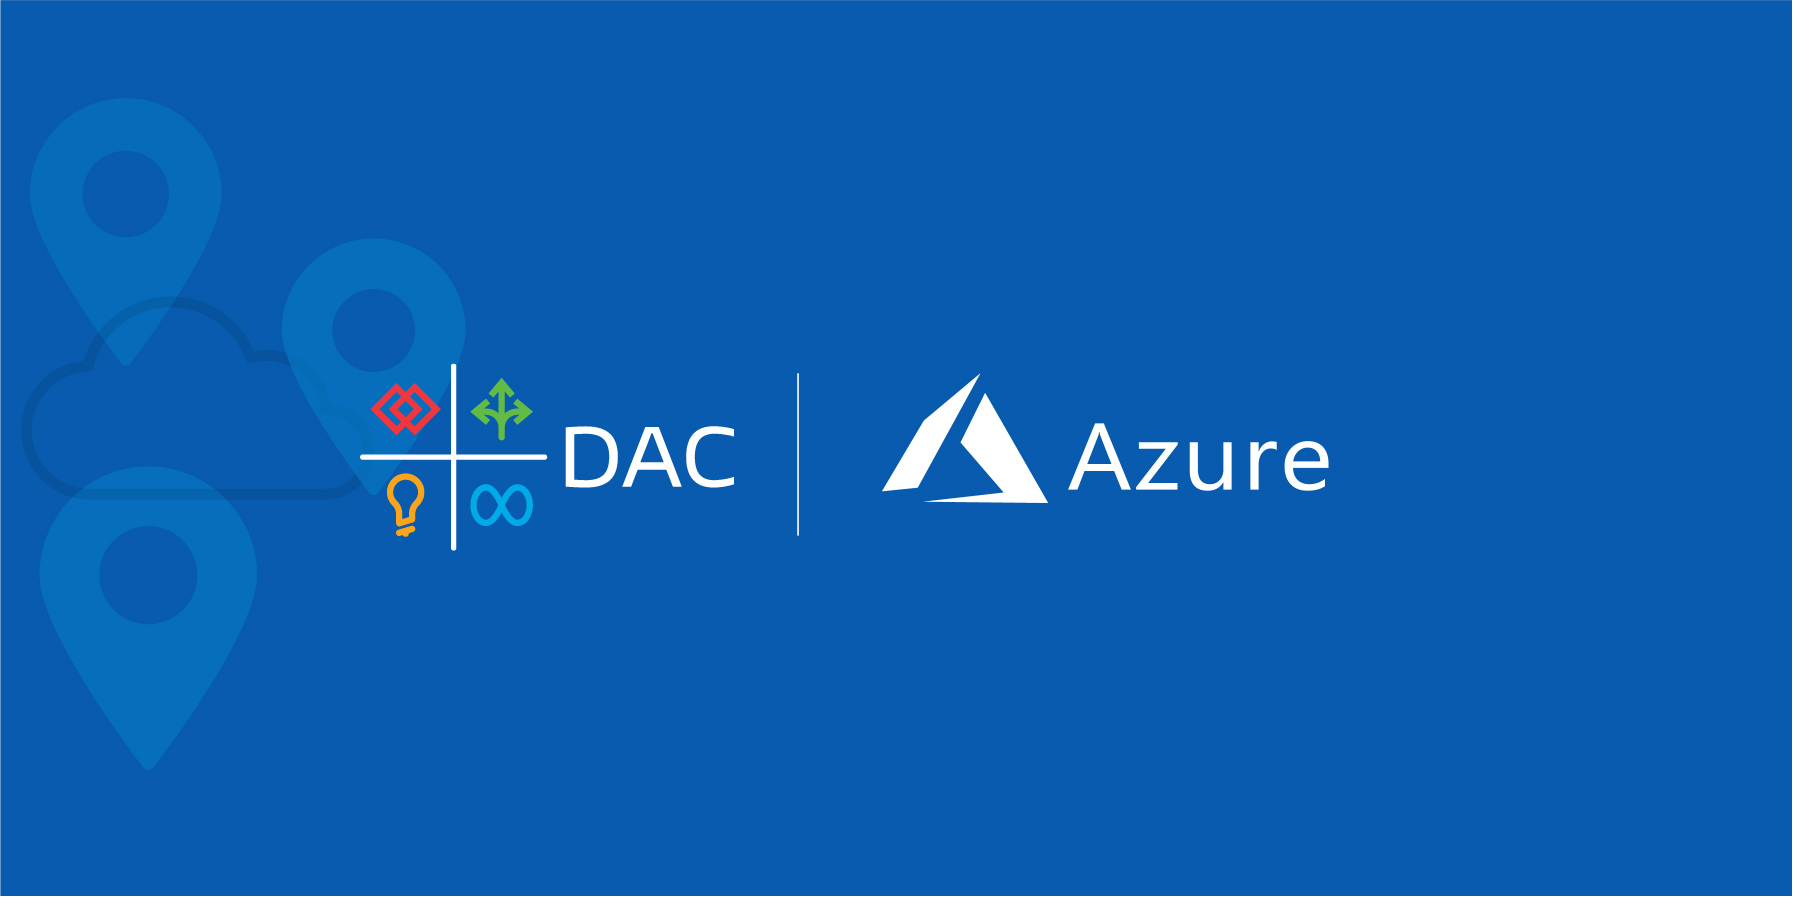 DAC and Azure logos